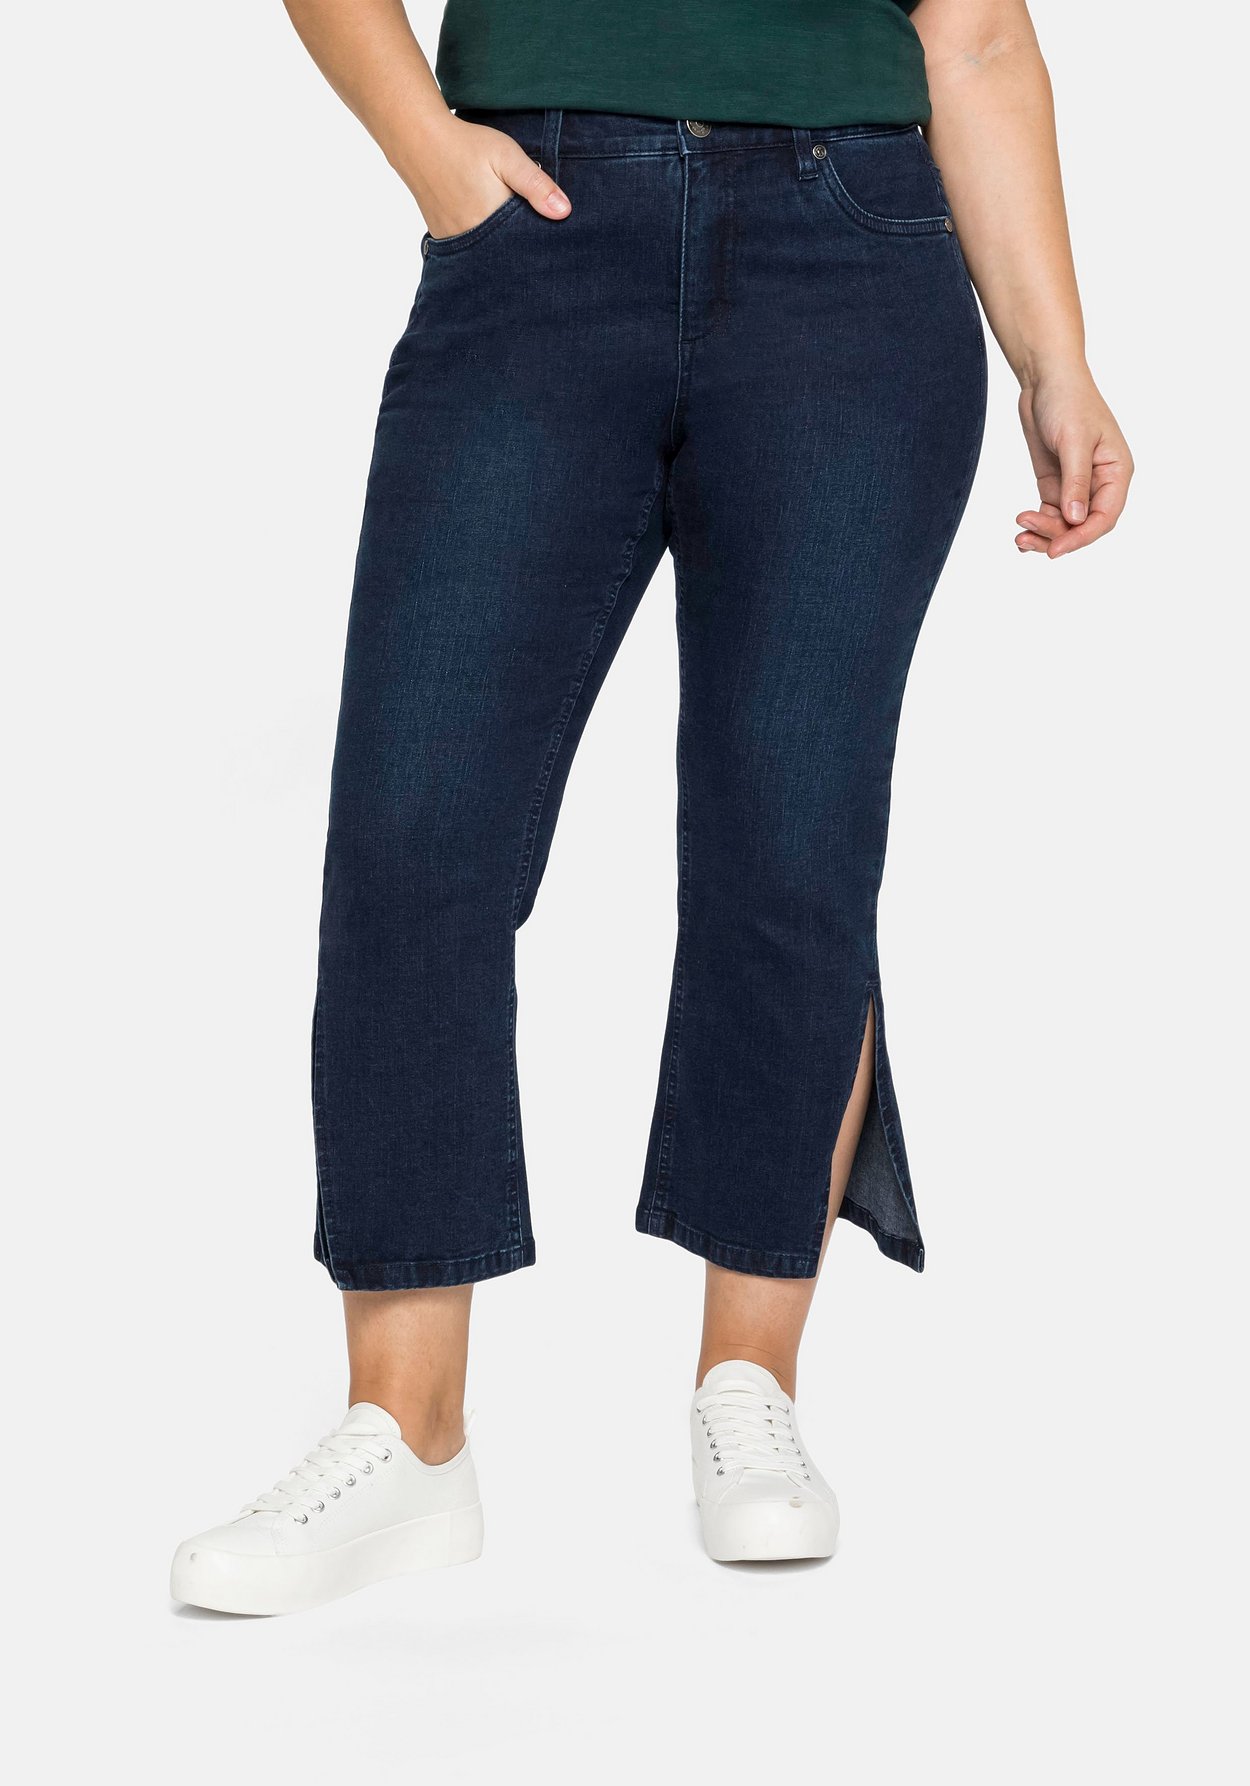 Bootcut-Jeans in 7/8-Länge mit hoch geschlitztem Saum - dark blue Denim |  sheego